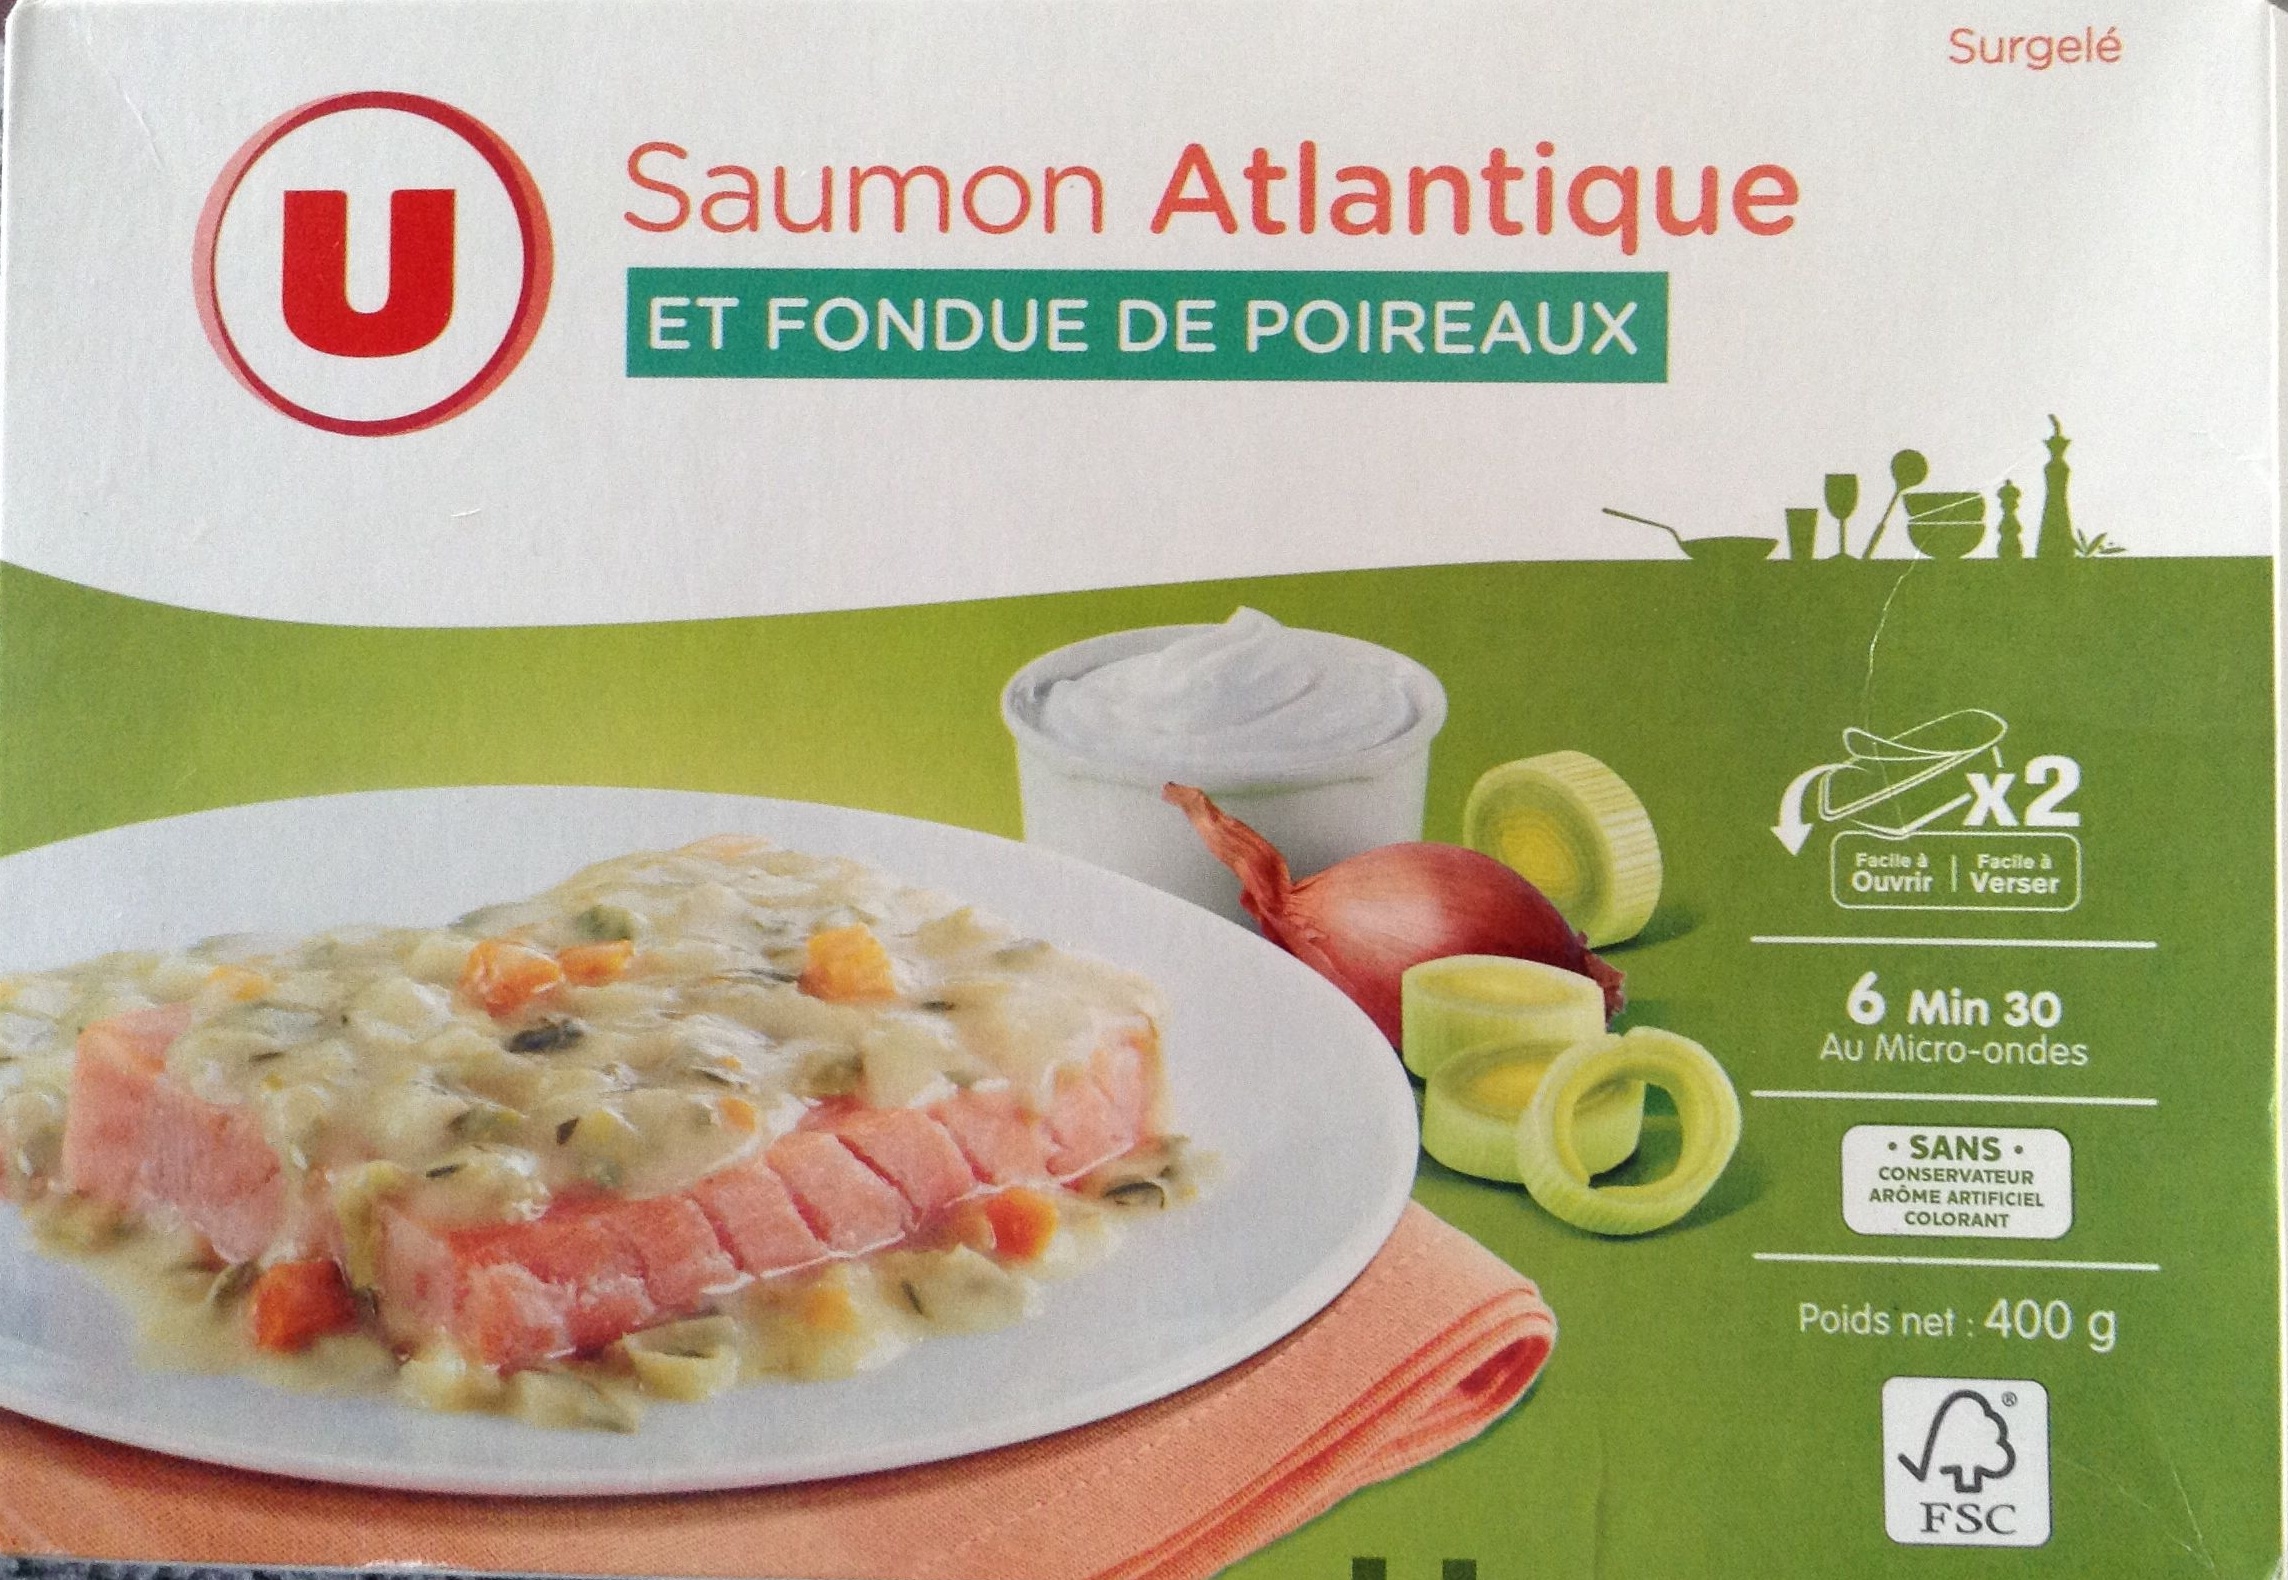 Saumon Atlantique et Fondue de Poireaux, Surgelé - Product - fr